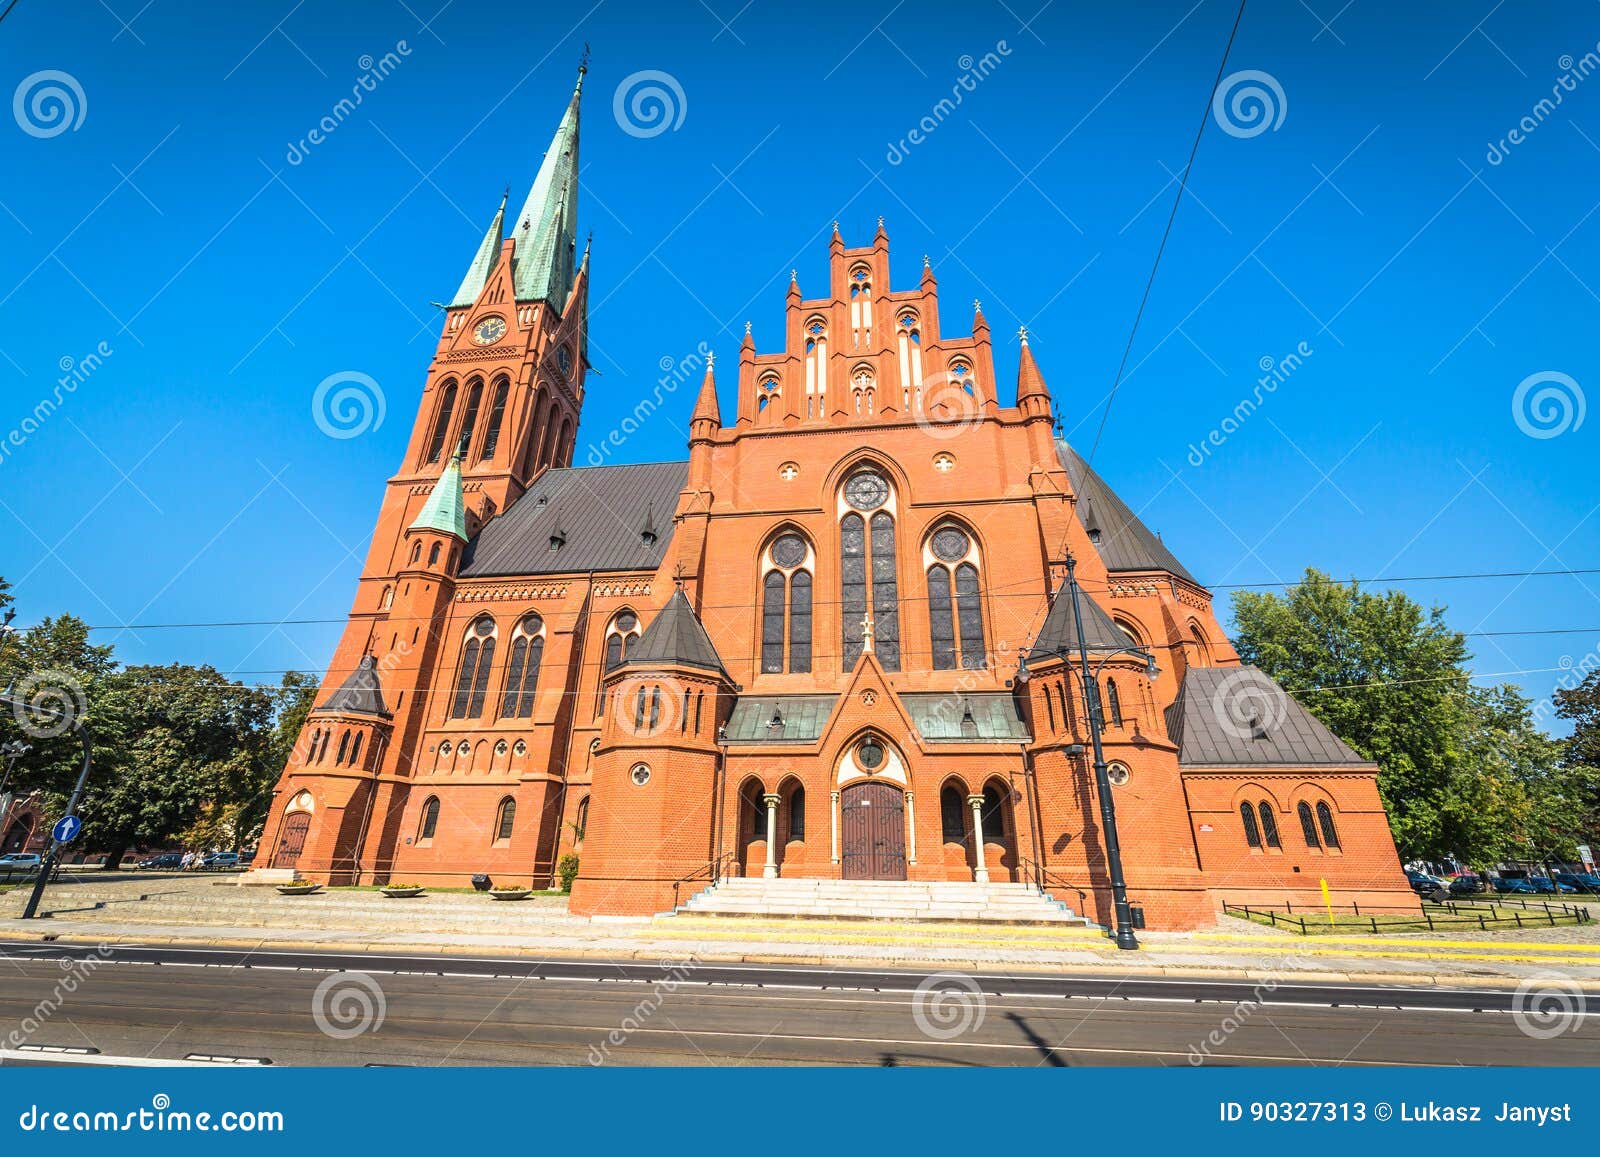 st mary church, torun, kuyavia-pomerania, poland